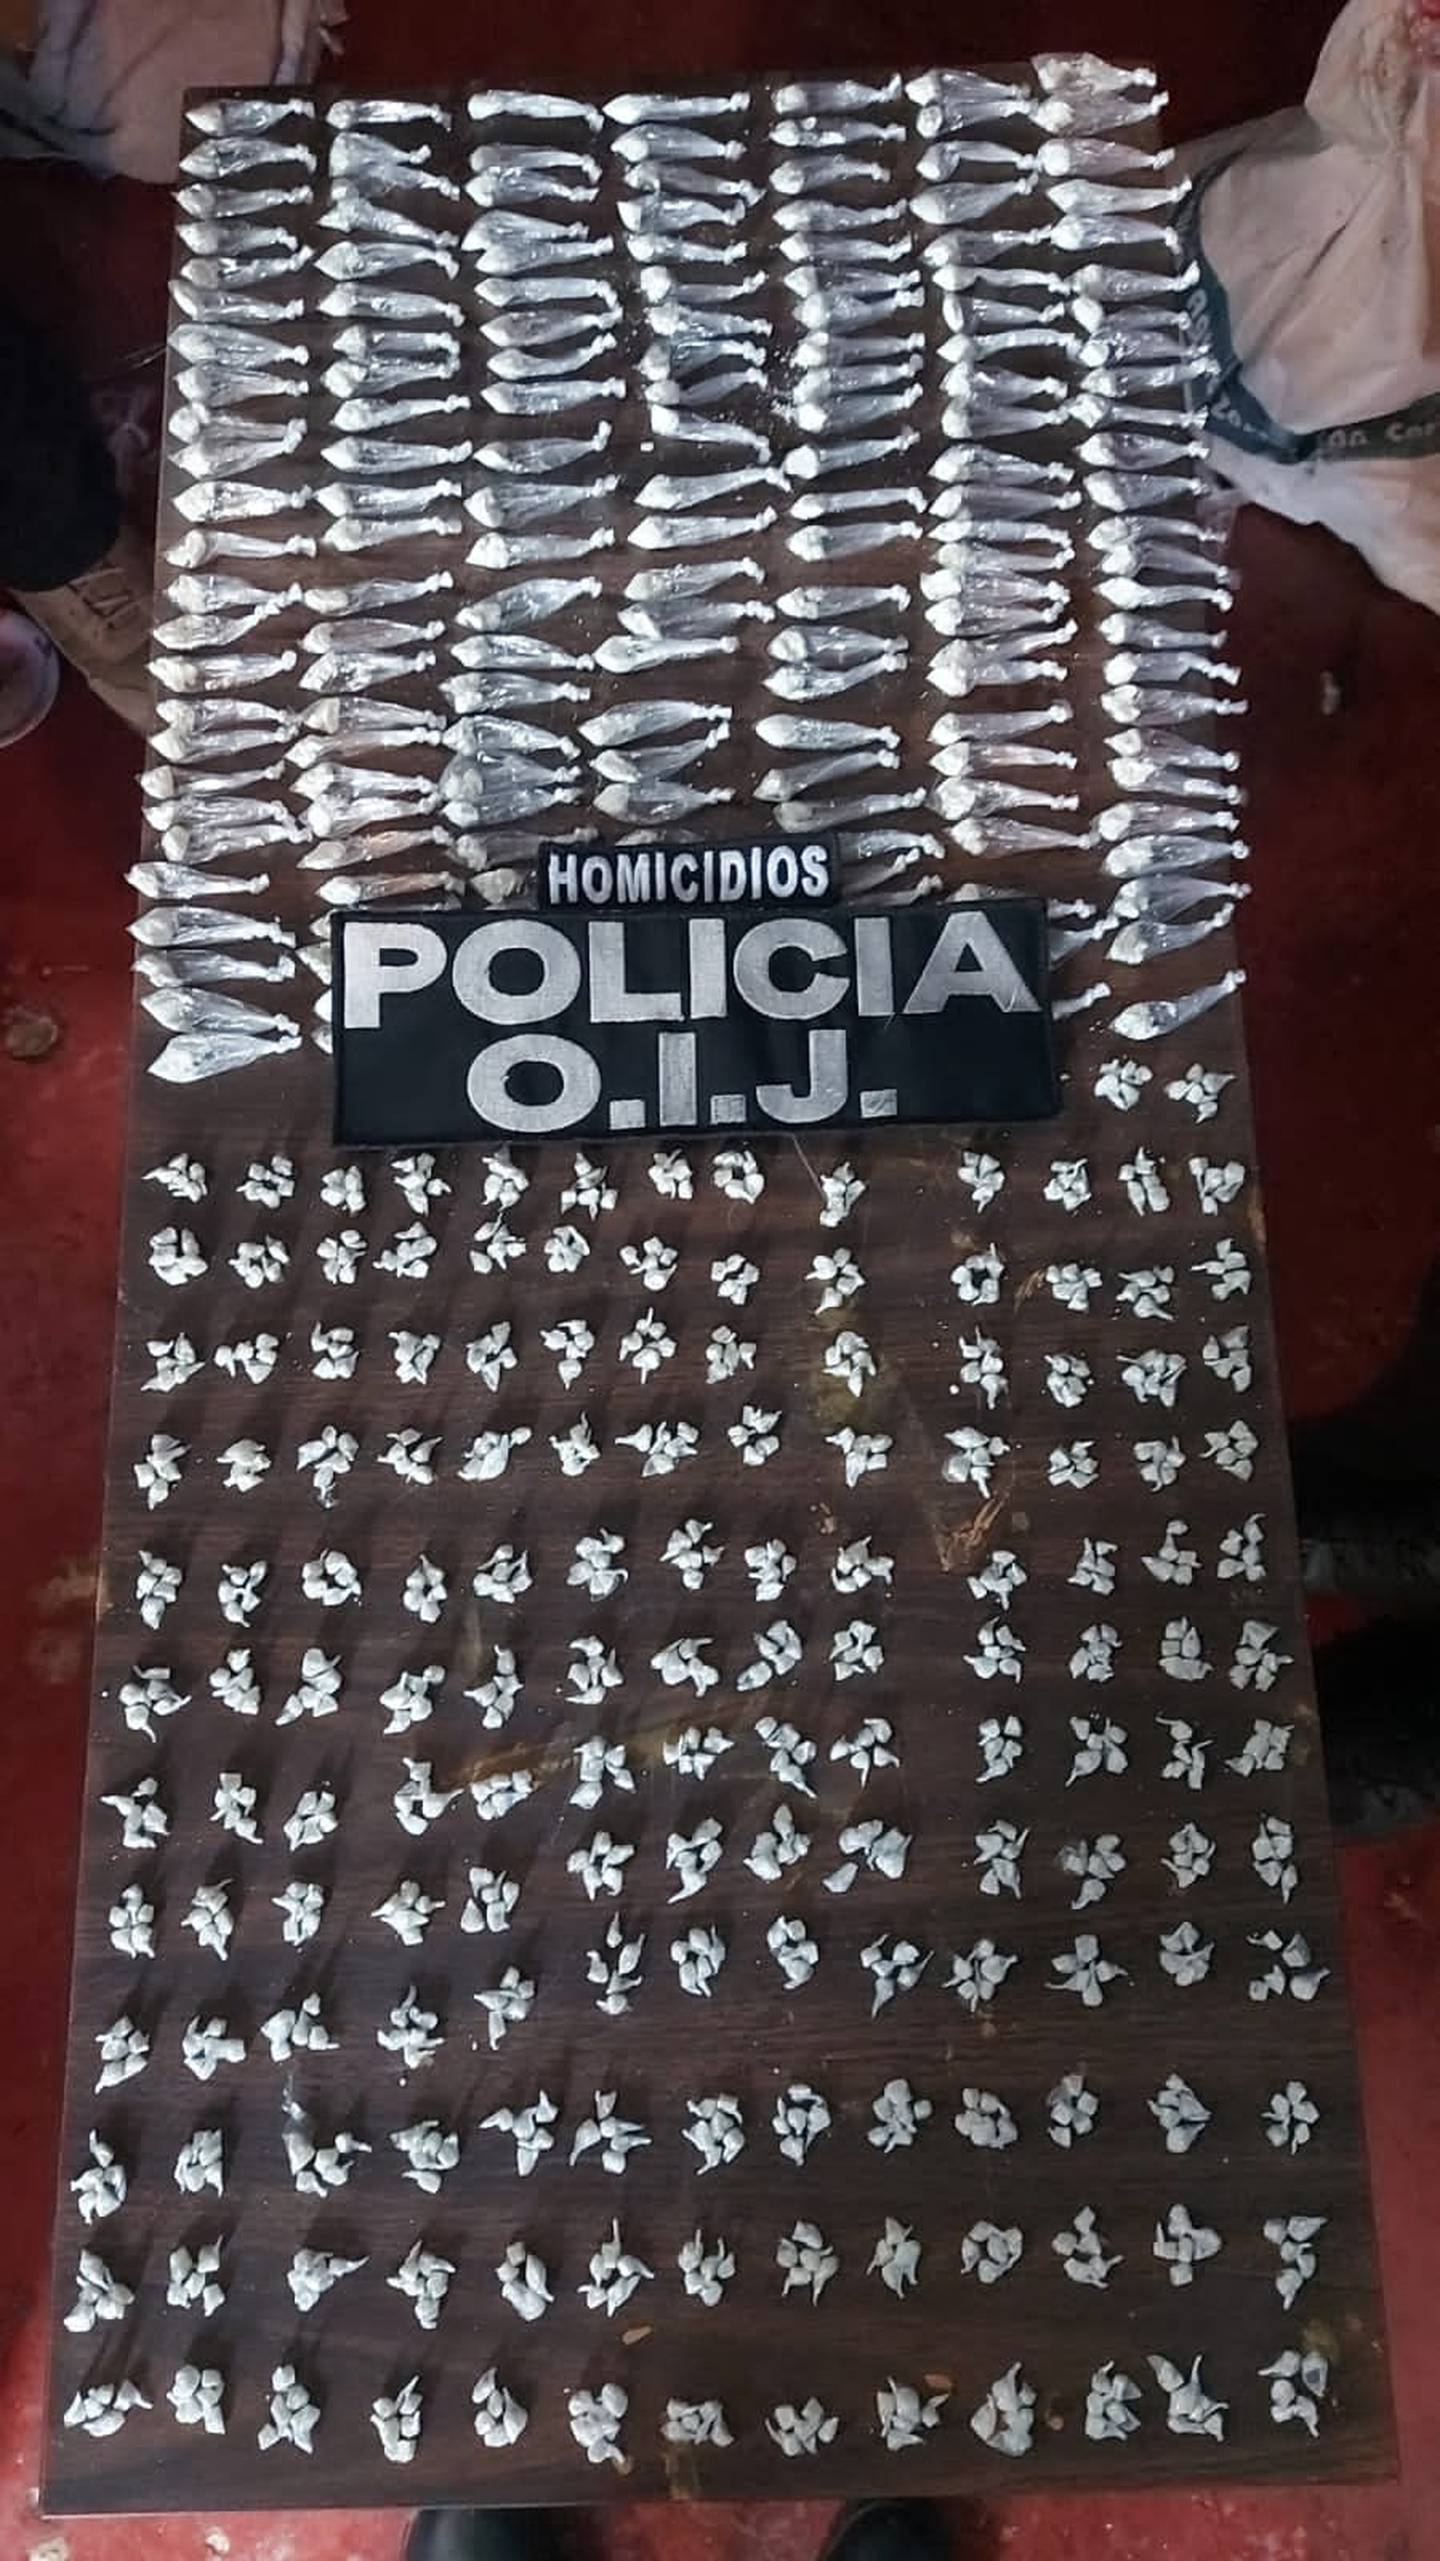 Detenidos supuestos miembros de banda narco en Purral. Foto OIJ.